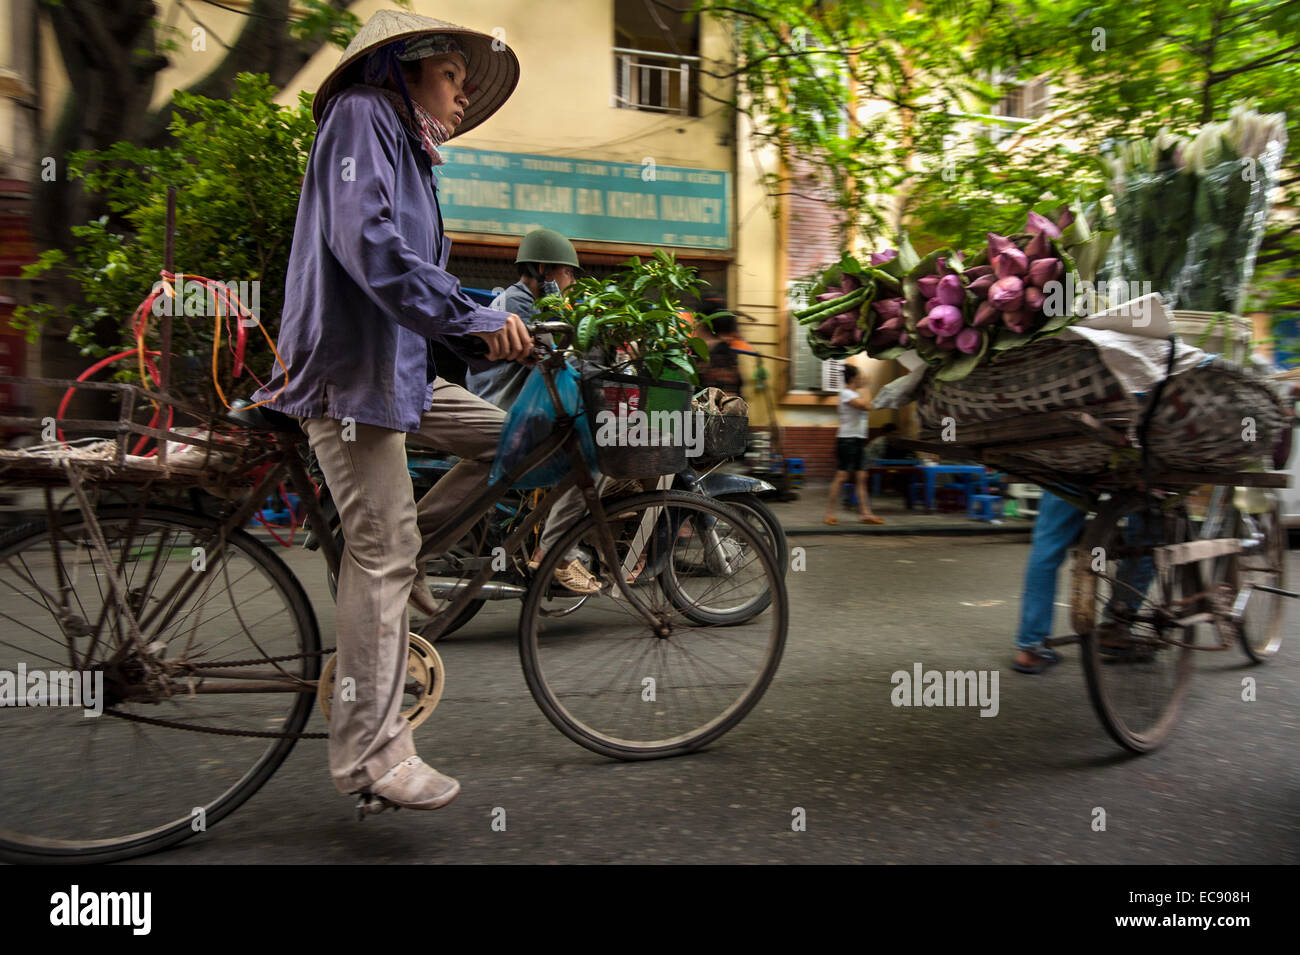 Garden on wheels, Hanoi Stock Photo